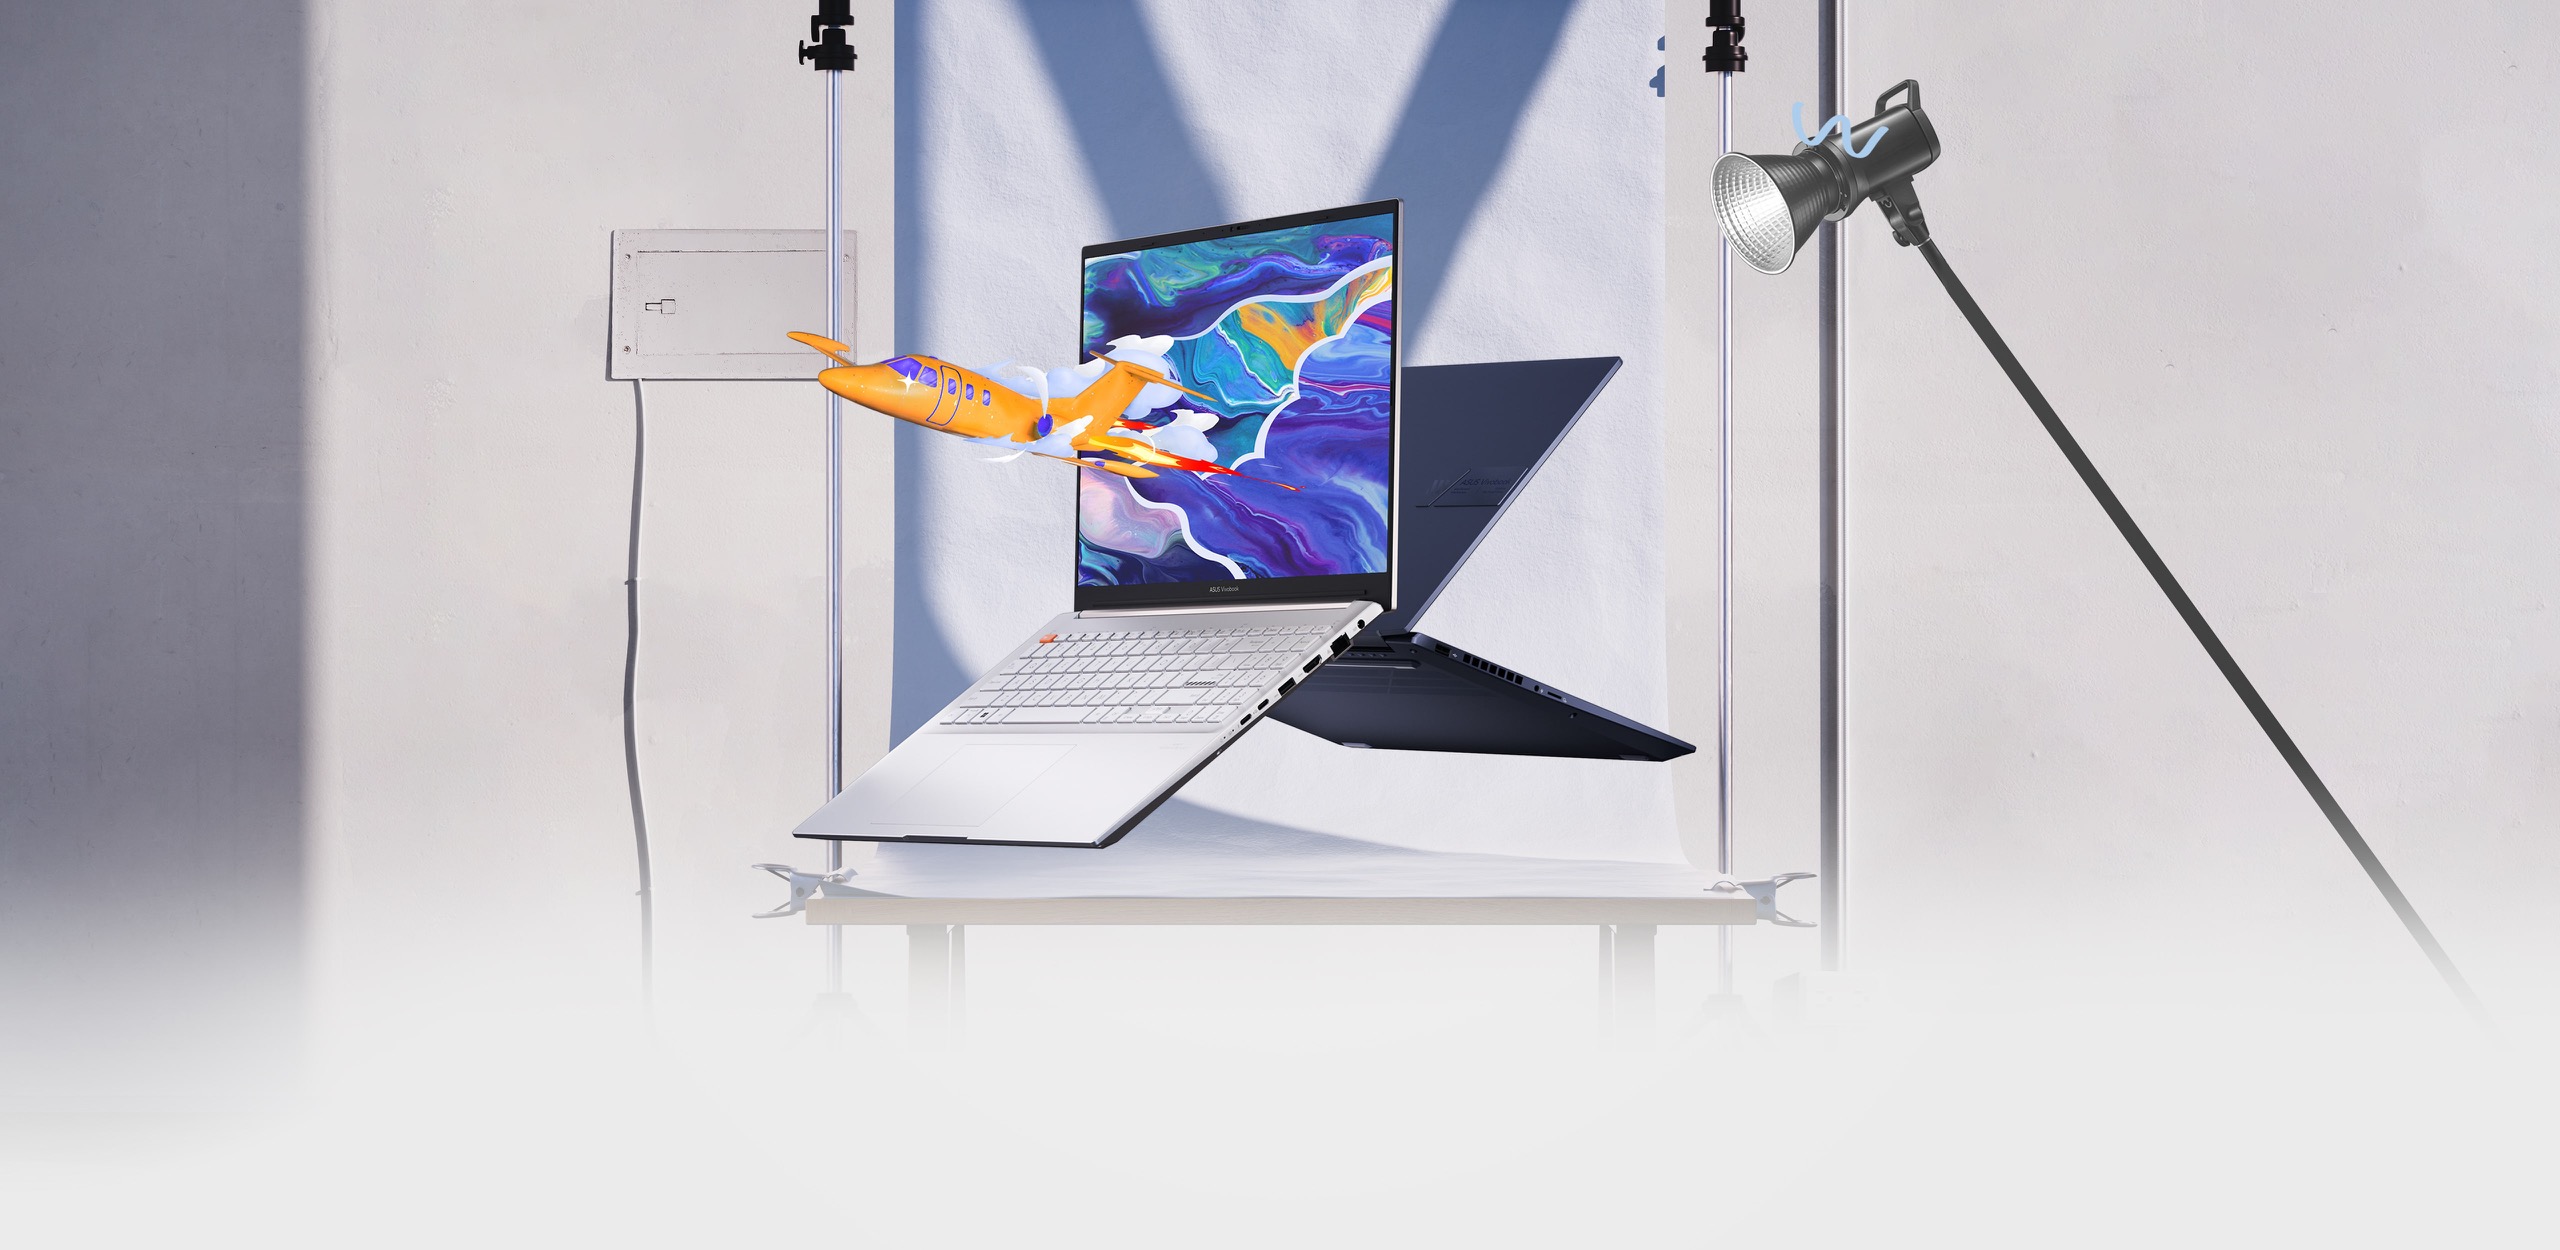 Hai chiếc laptop Vivobook Pro 16 OLED nhìn từ mặt trước và sau, một chiếc hiển thị hình ảnh một chiếc máy bay nổi bật trên hình ảnh nhiều màu sắc trên màn hình.